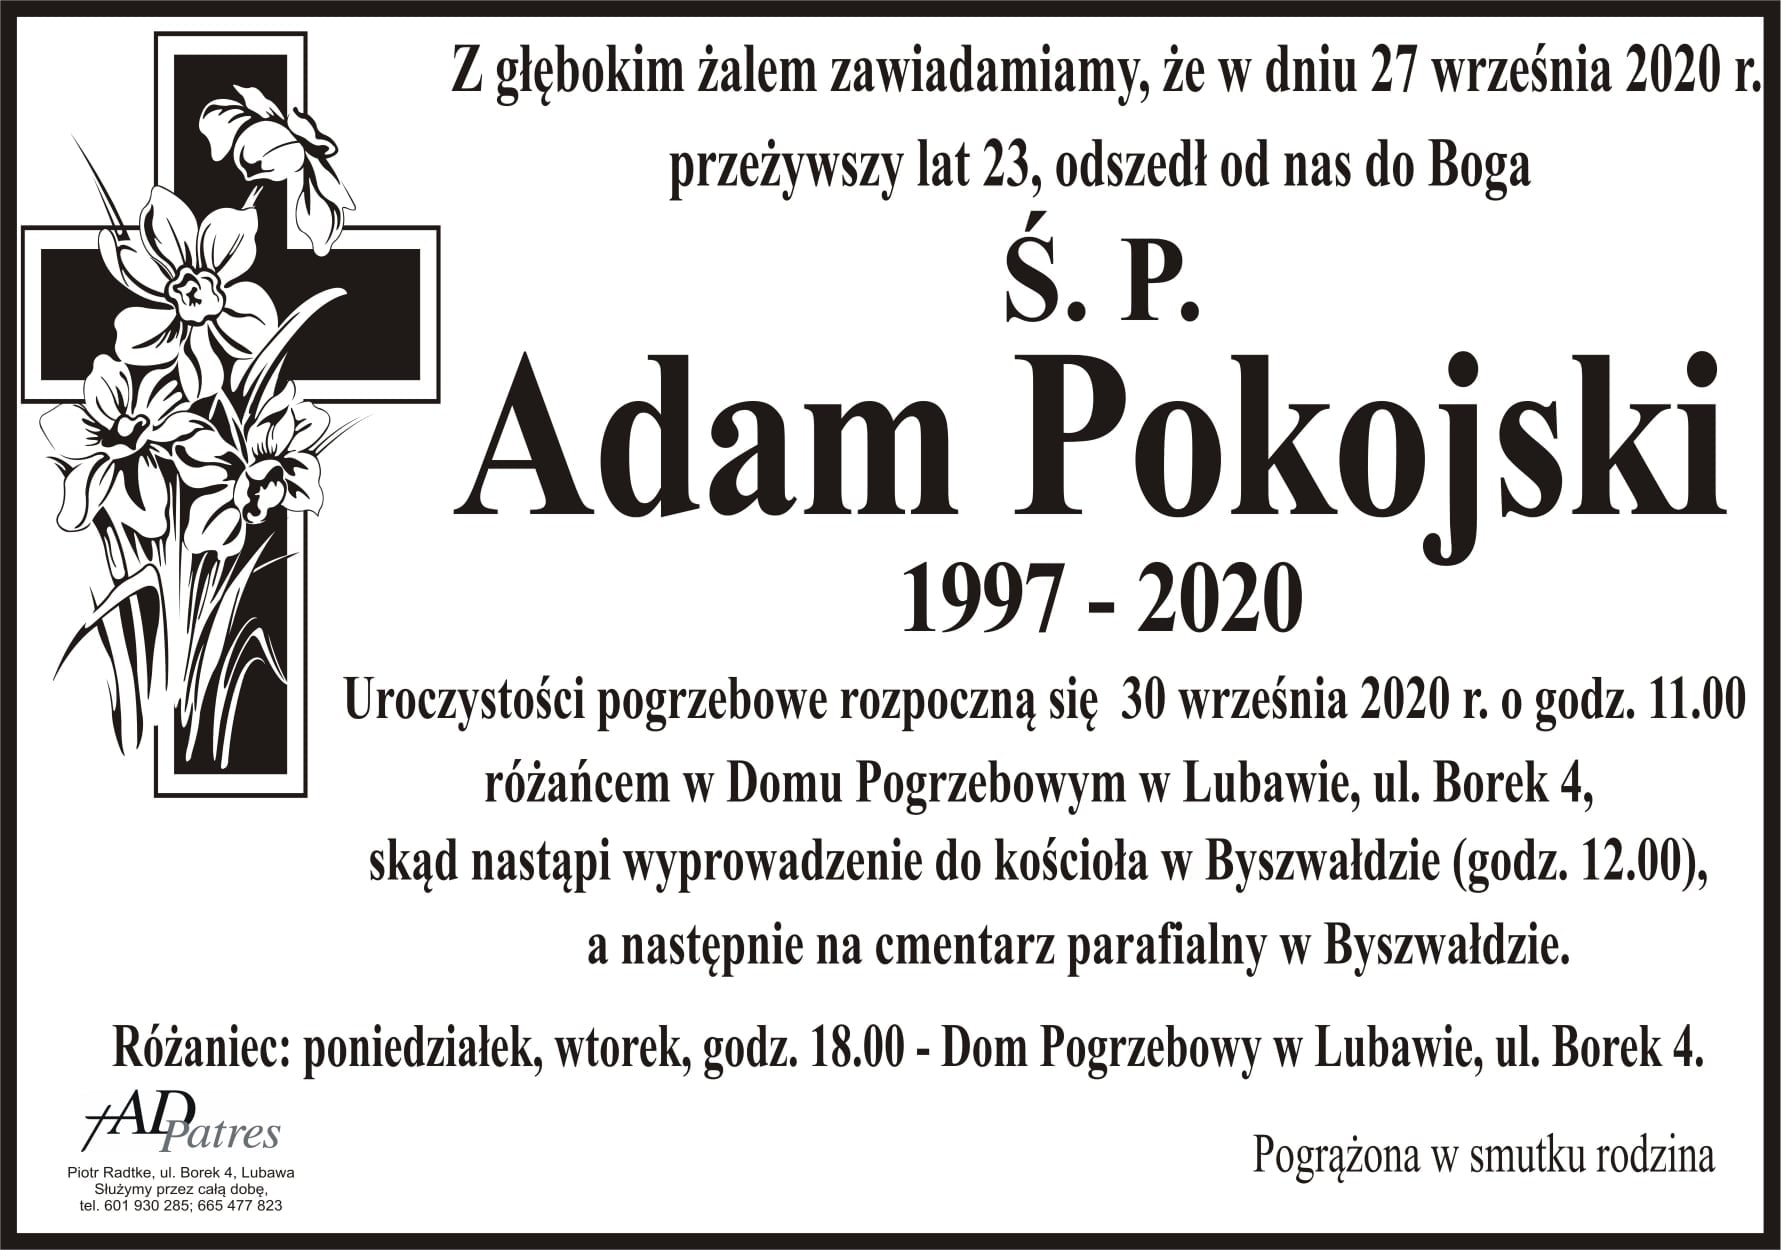 Adam Pokojski (1997-2020) - materiał z profilu naszego śp. absolwenta https://www.facebook.com/adam.pokojski.3